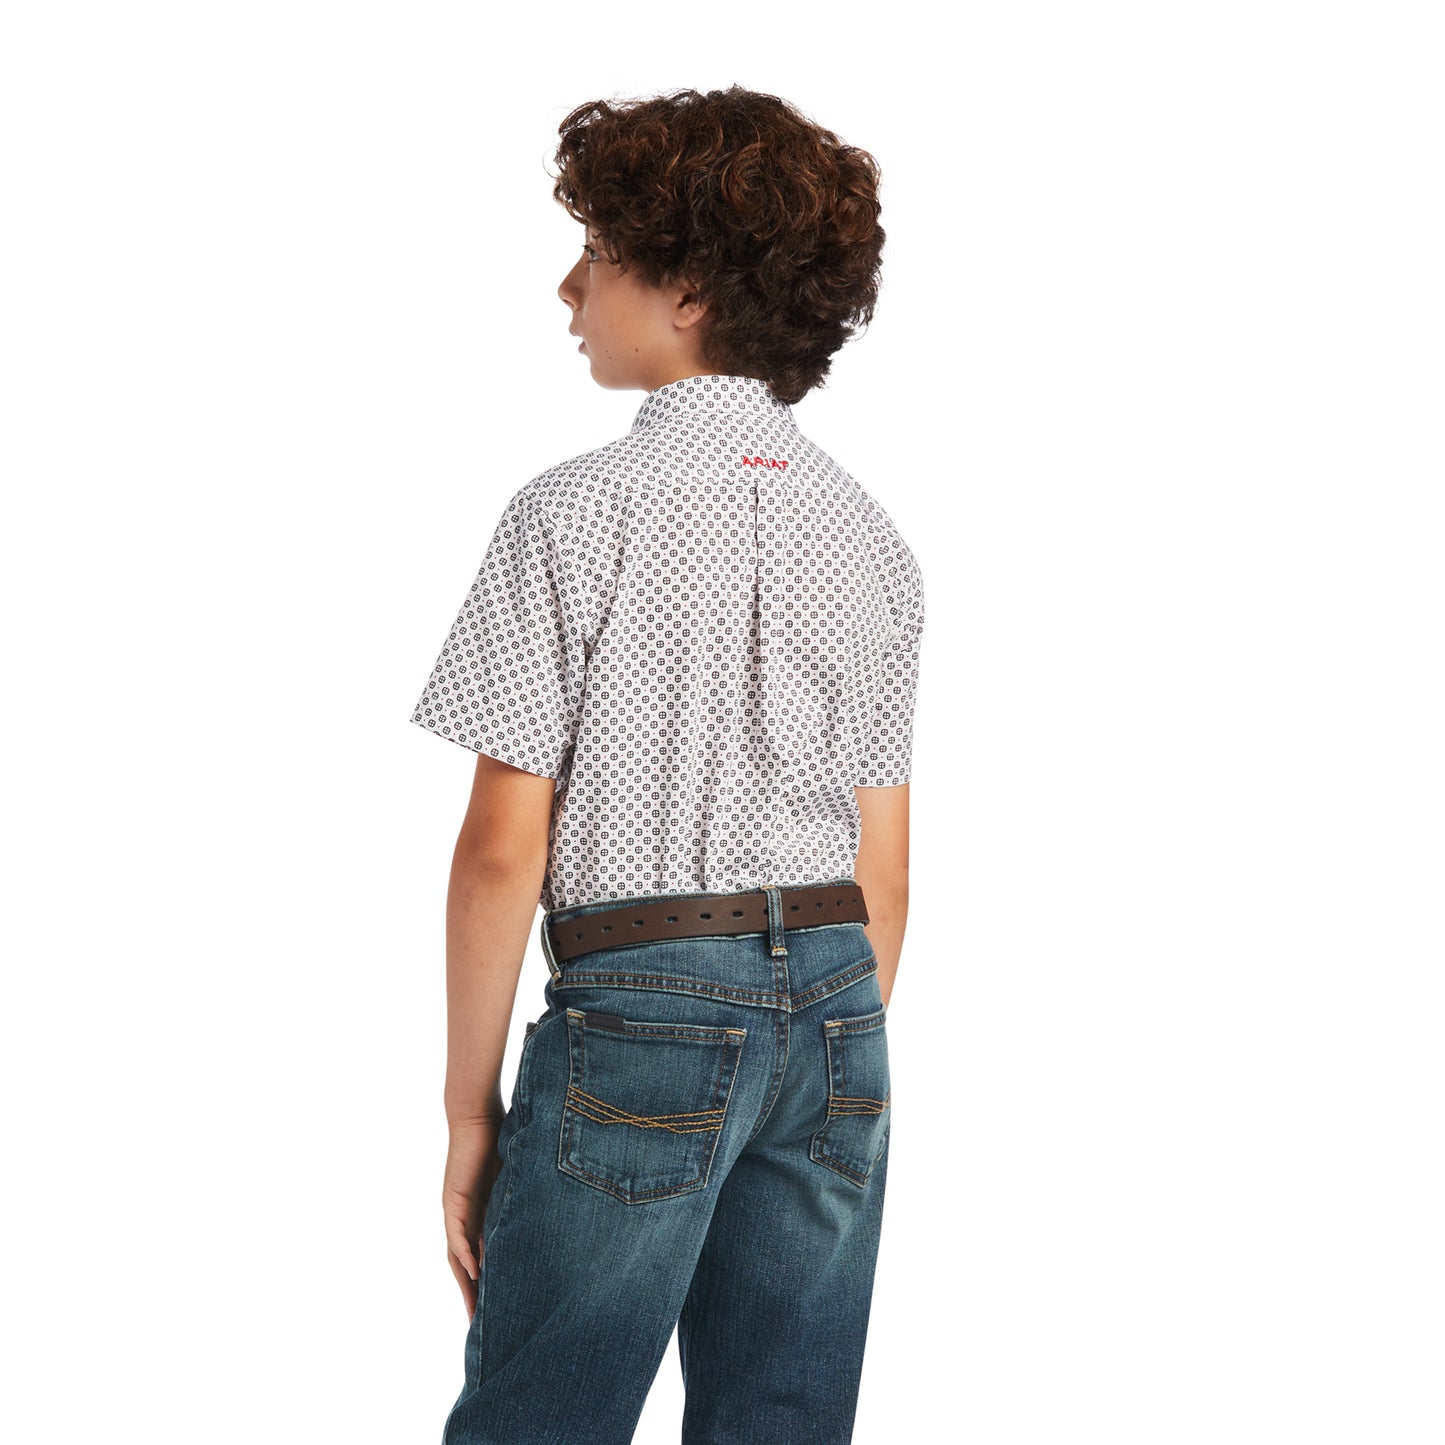 Ariat® Youth Boy's Fionn Classic White Button Down Shirt 10040741